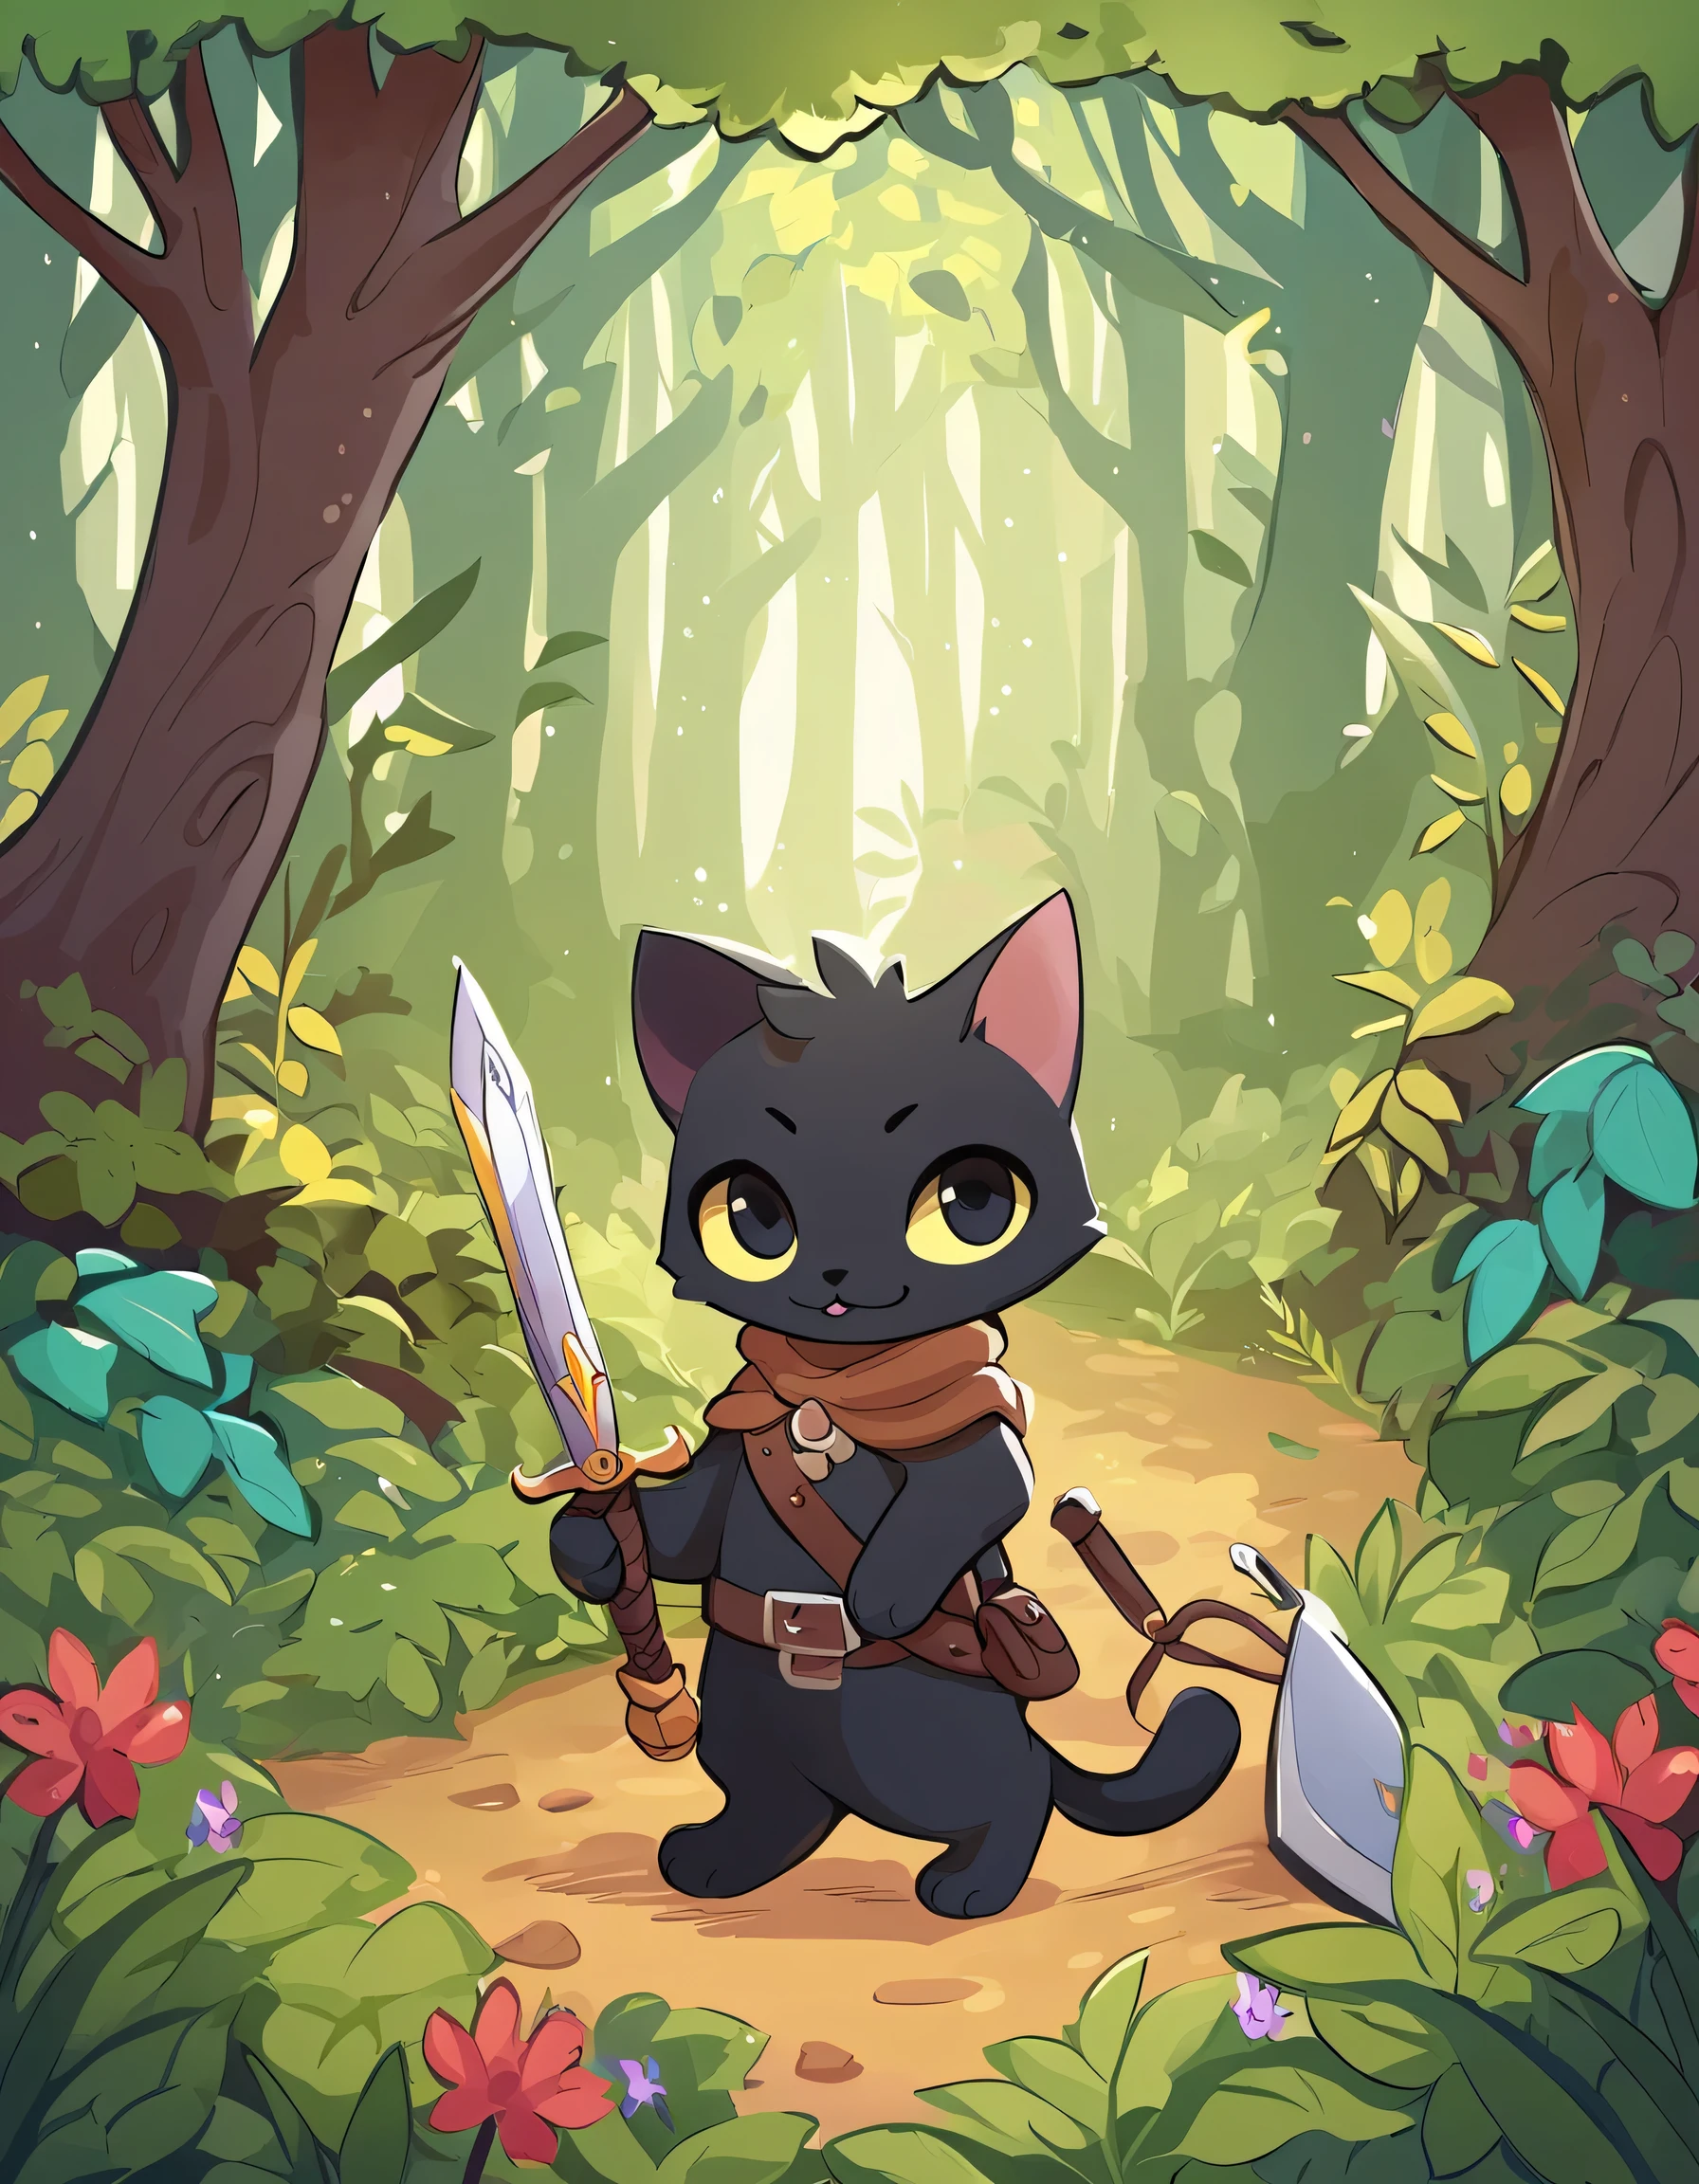 一只可爱的黑猫的插图, 带着剑和盾牌穿越森林冒险